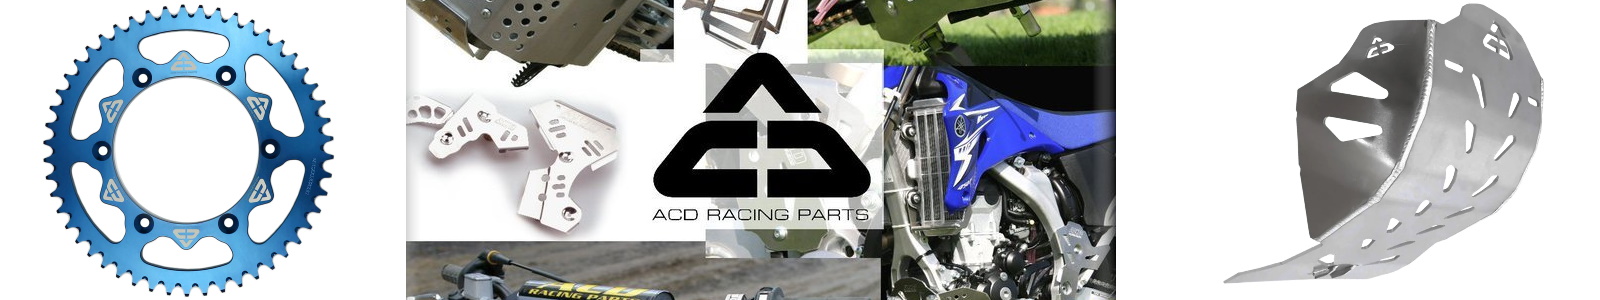 Carene moto ACD Racing Parti